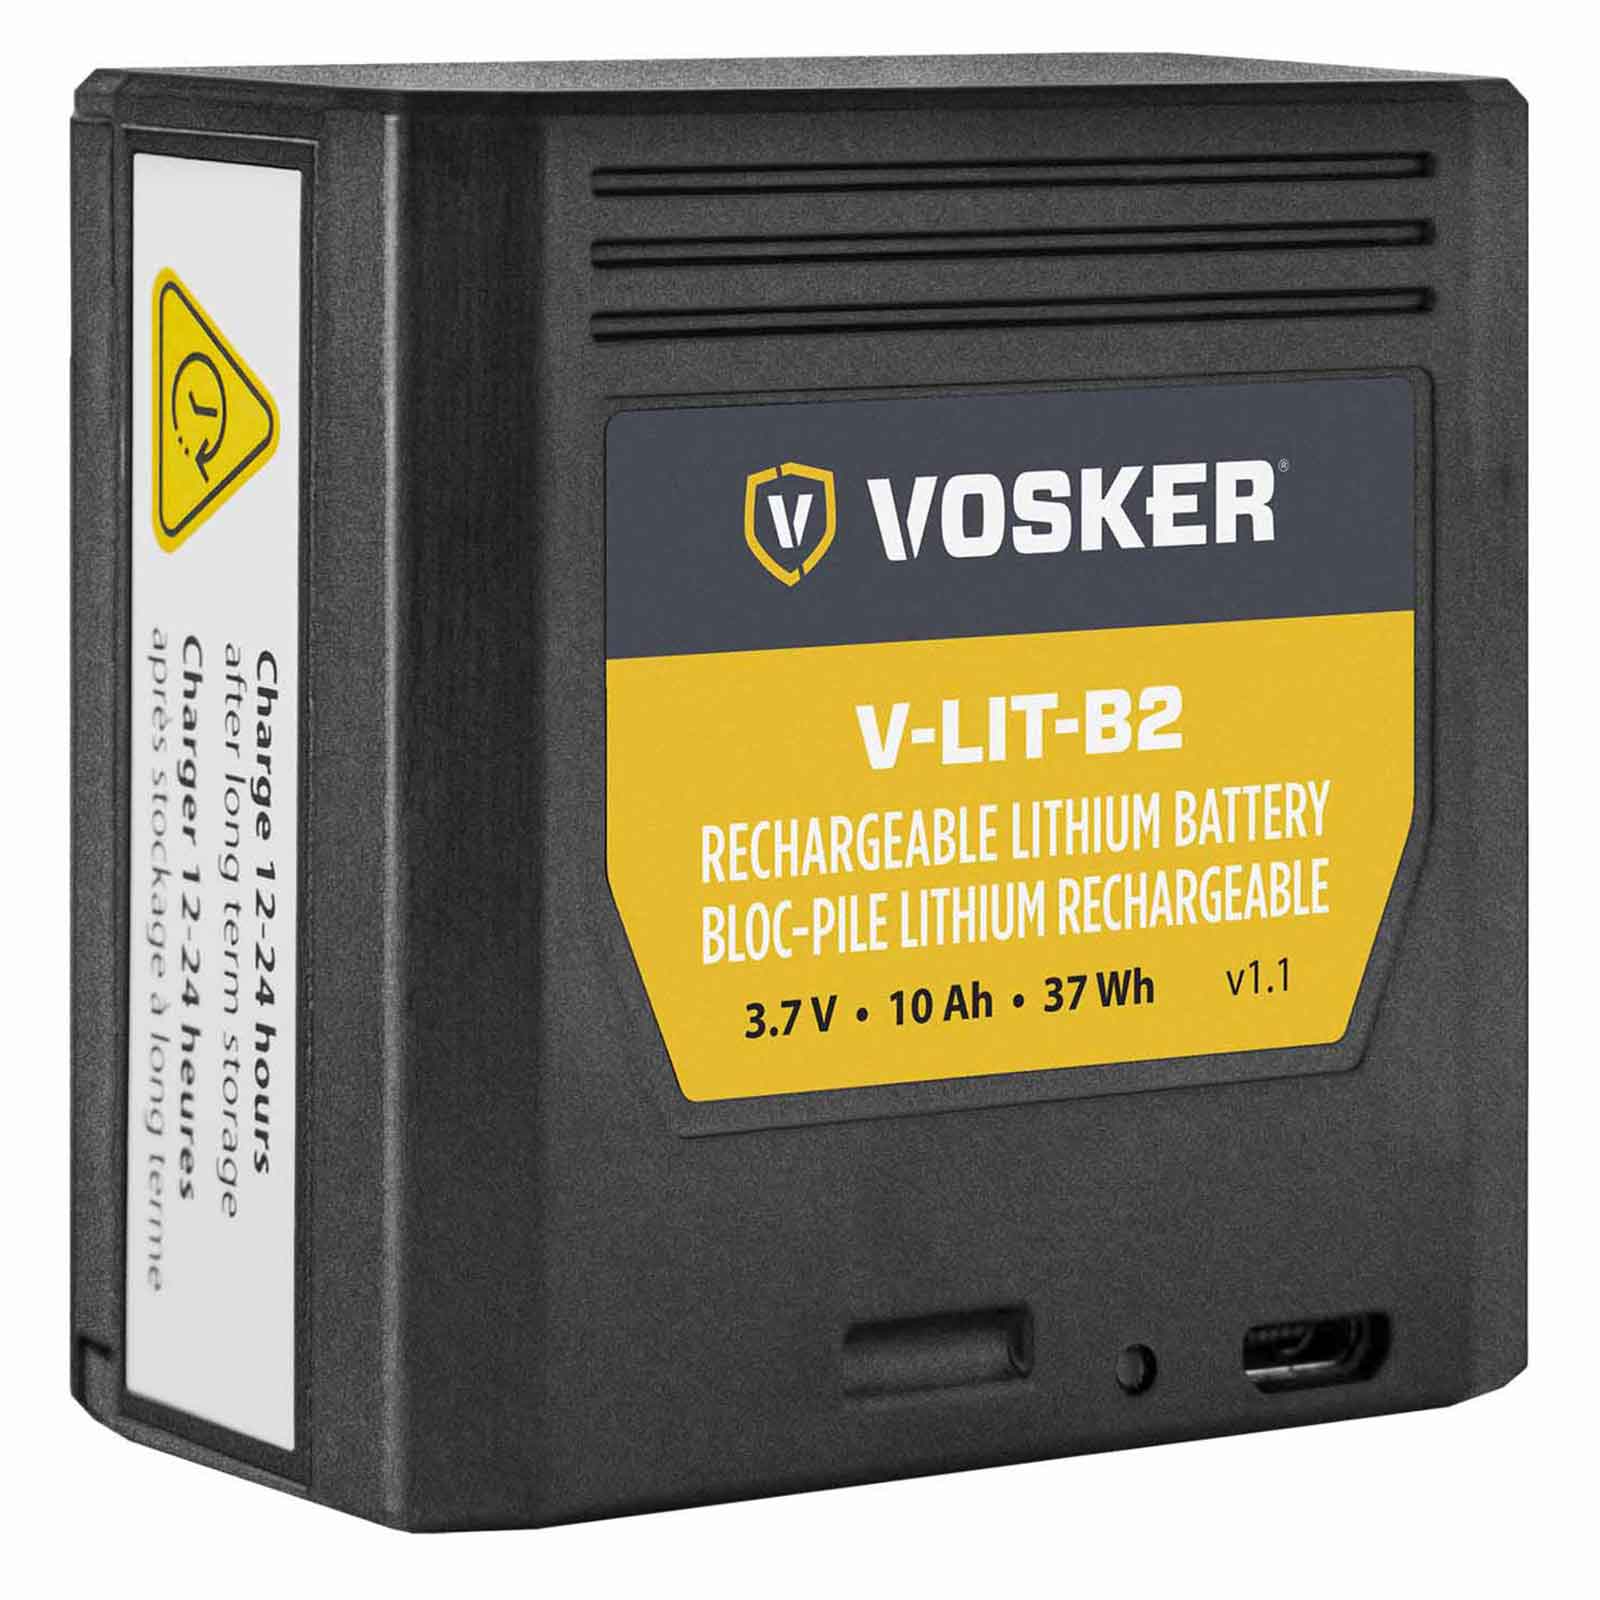 Vosker V-LIT-B2 lítium akkumulátor